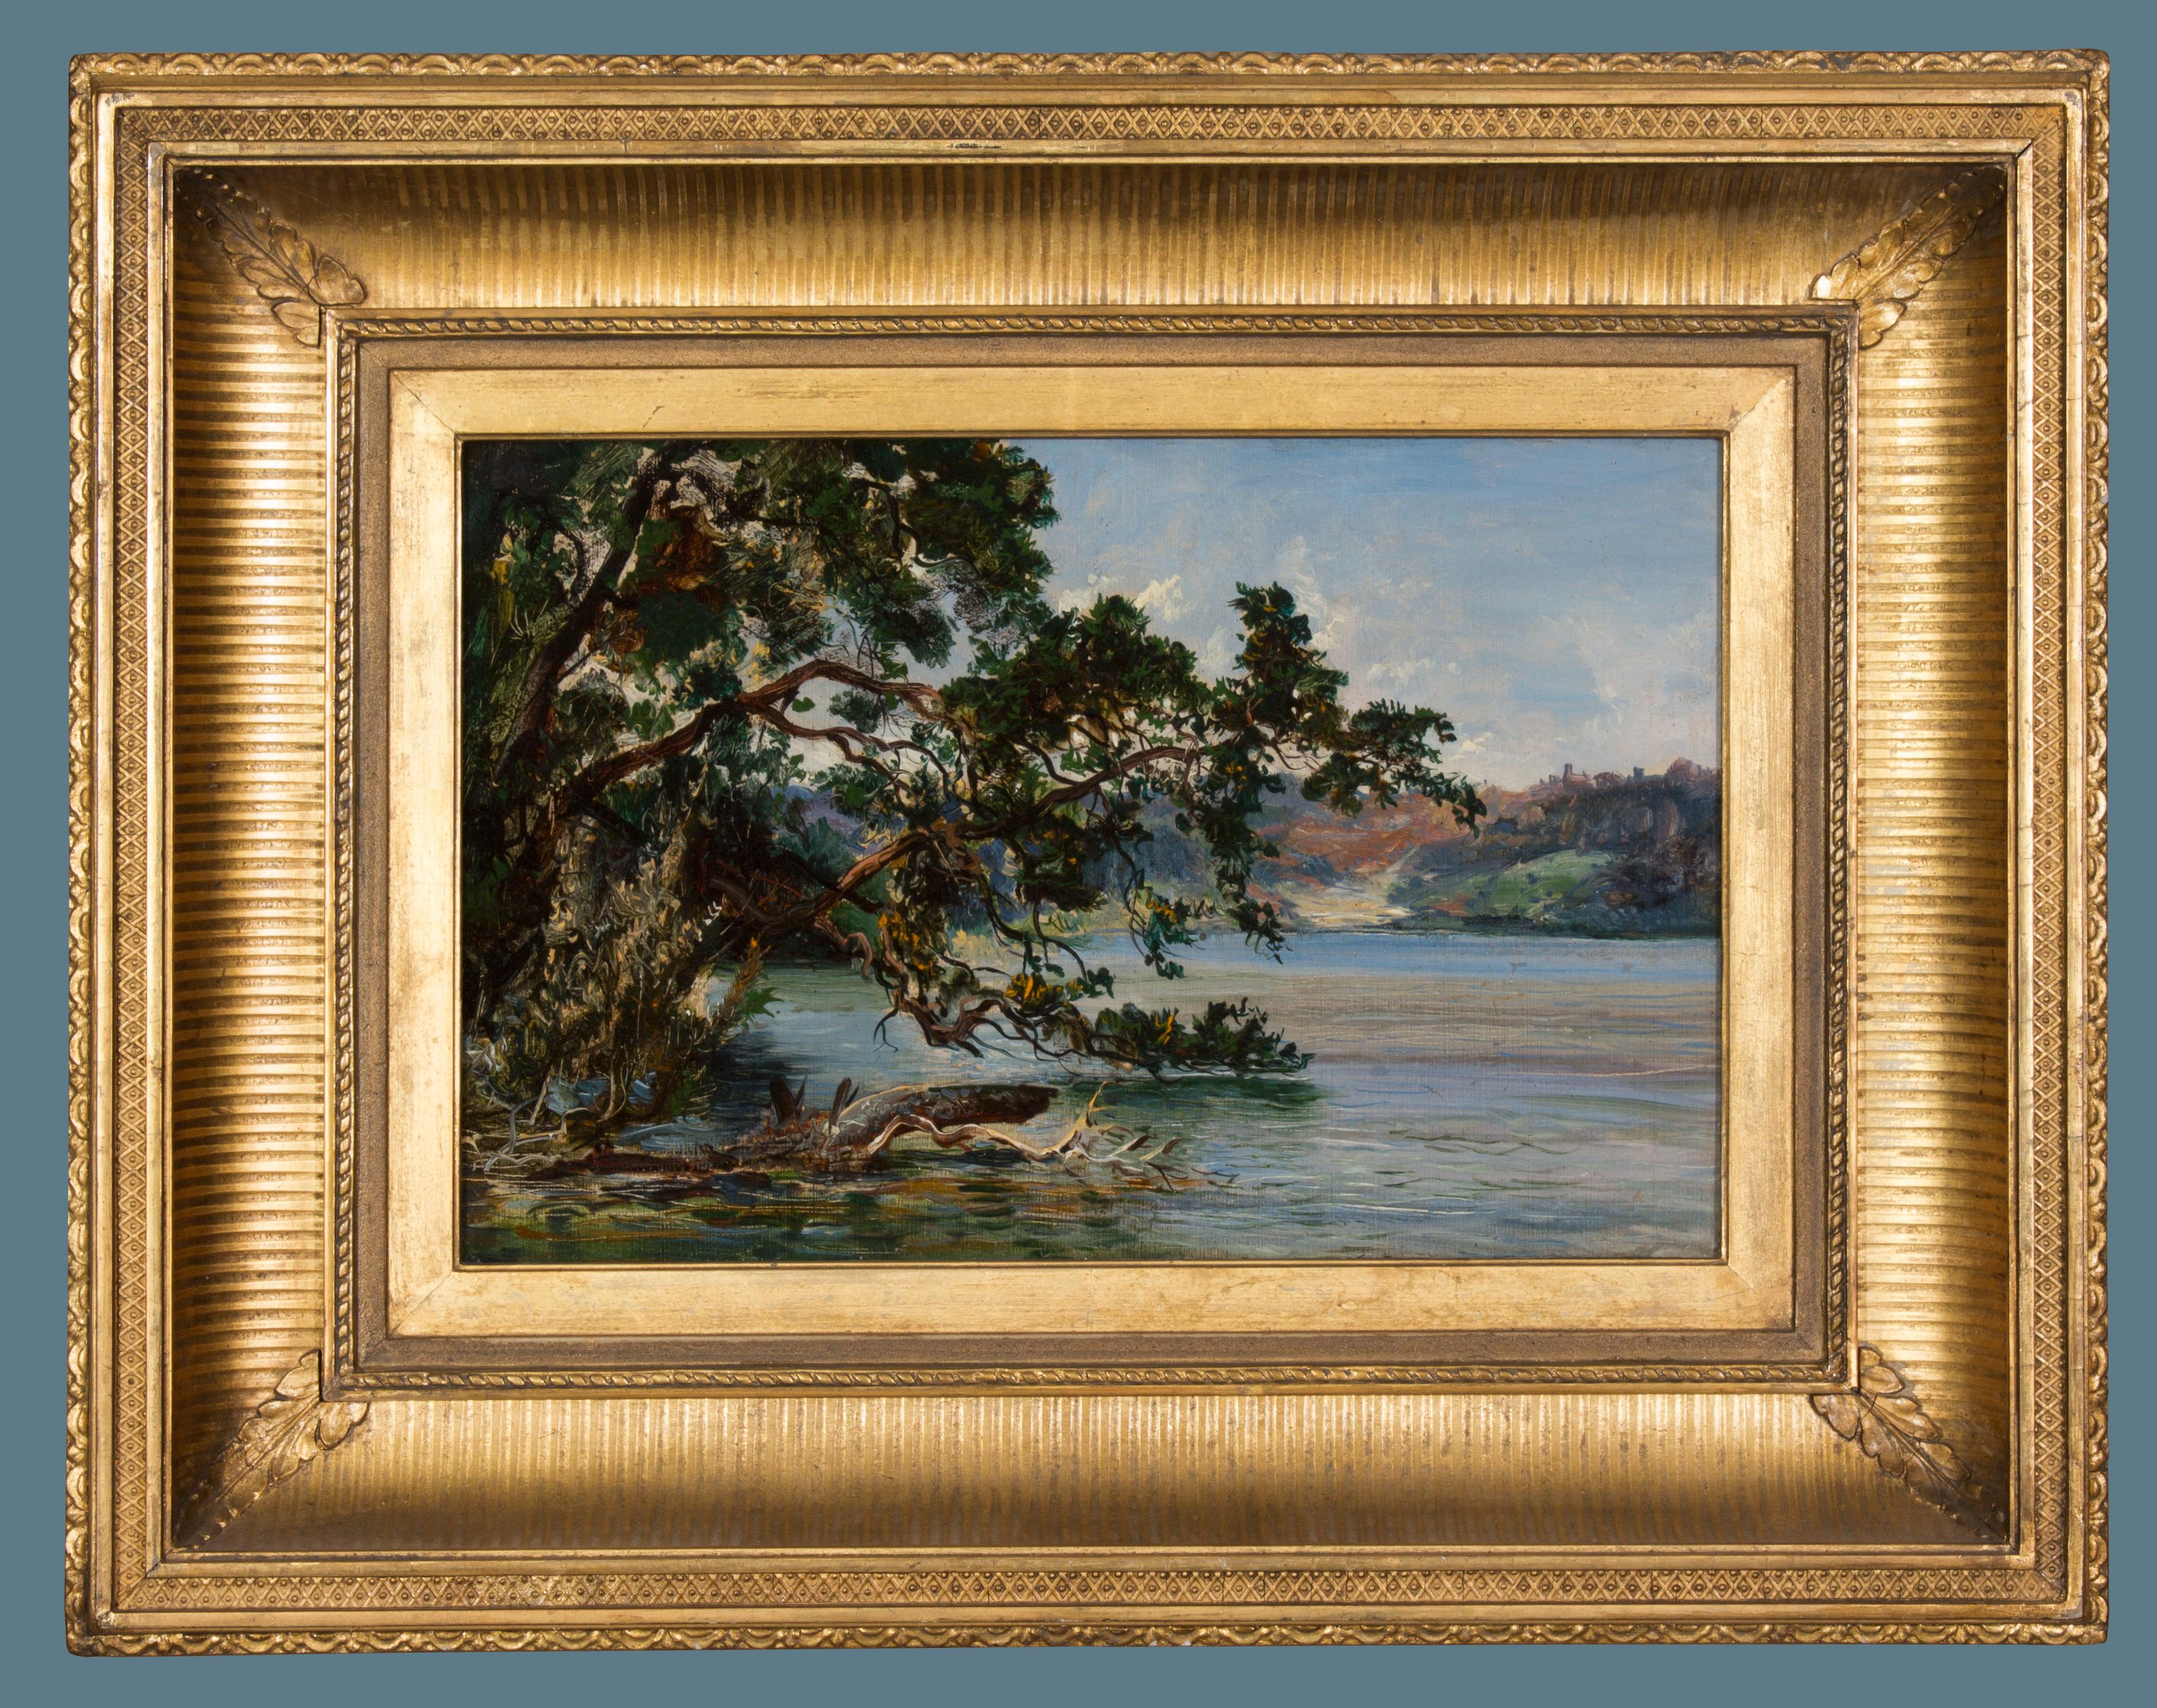 Unknown Landscape Painting – Flussuferlandschaft aus dem neunzehnten Jahrhundert von einem unbekannten Künstler